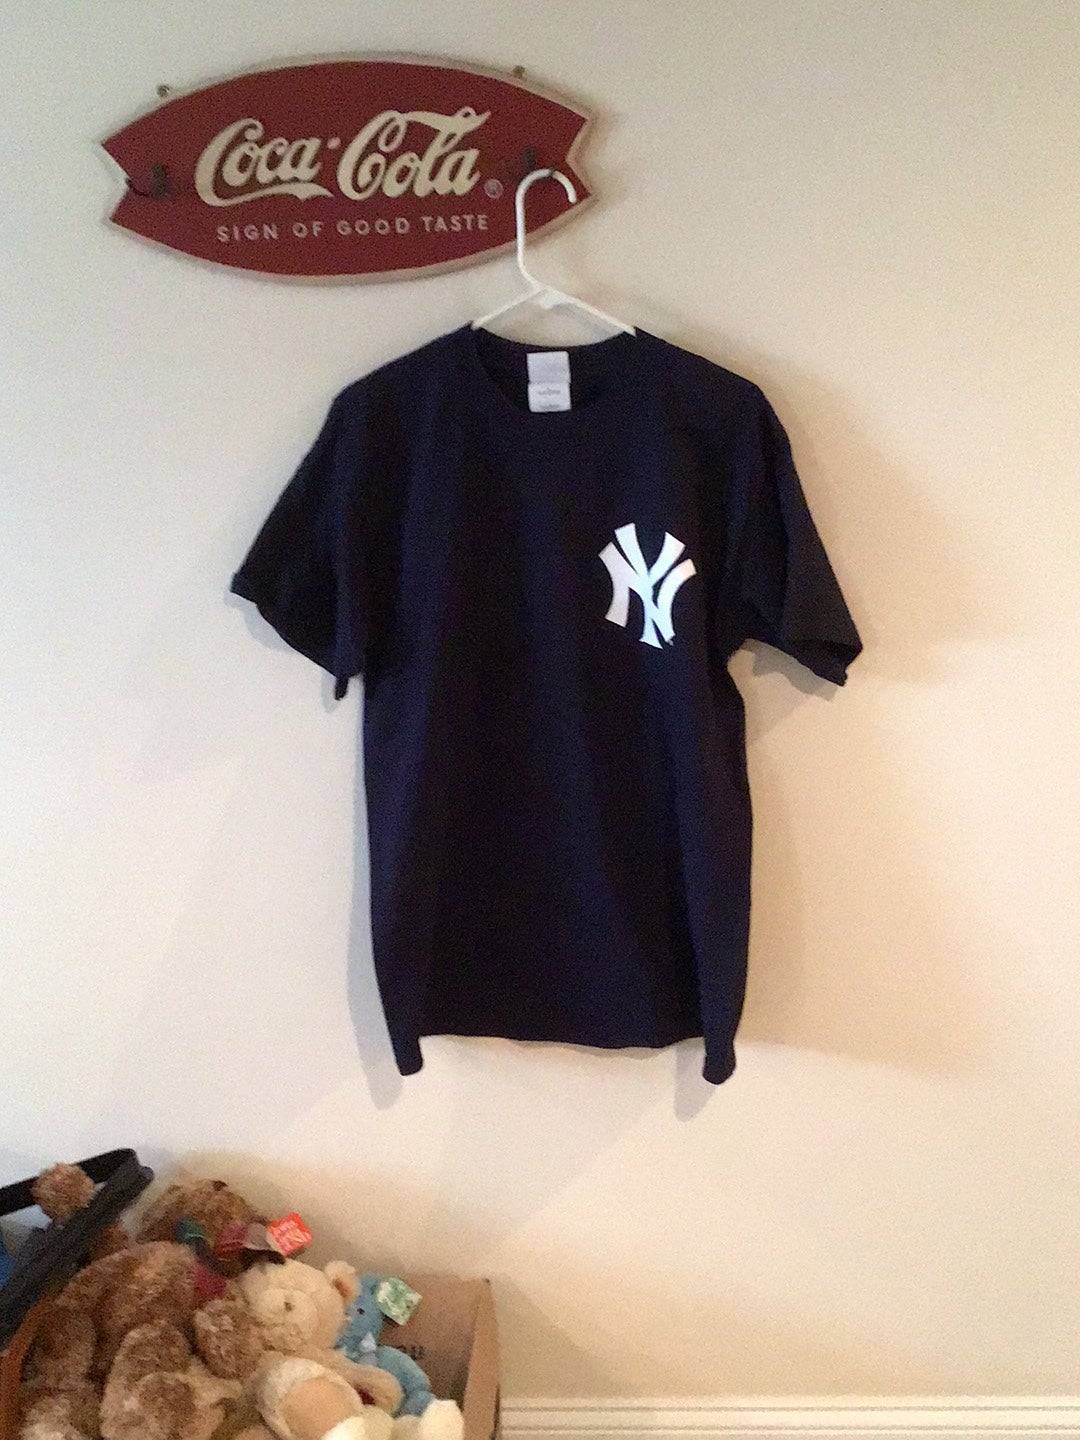 Vintage New York Yankees Hideki Matsui Stitched Majestic Jersey Sz.